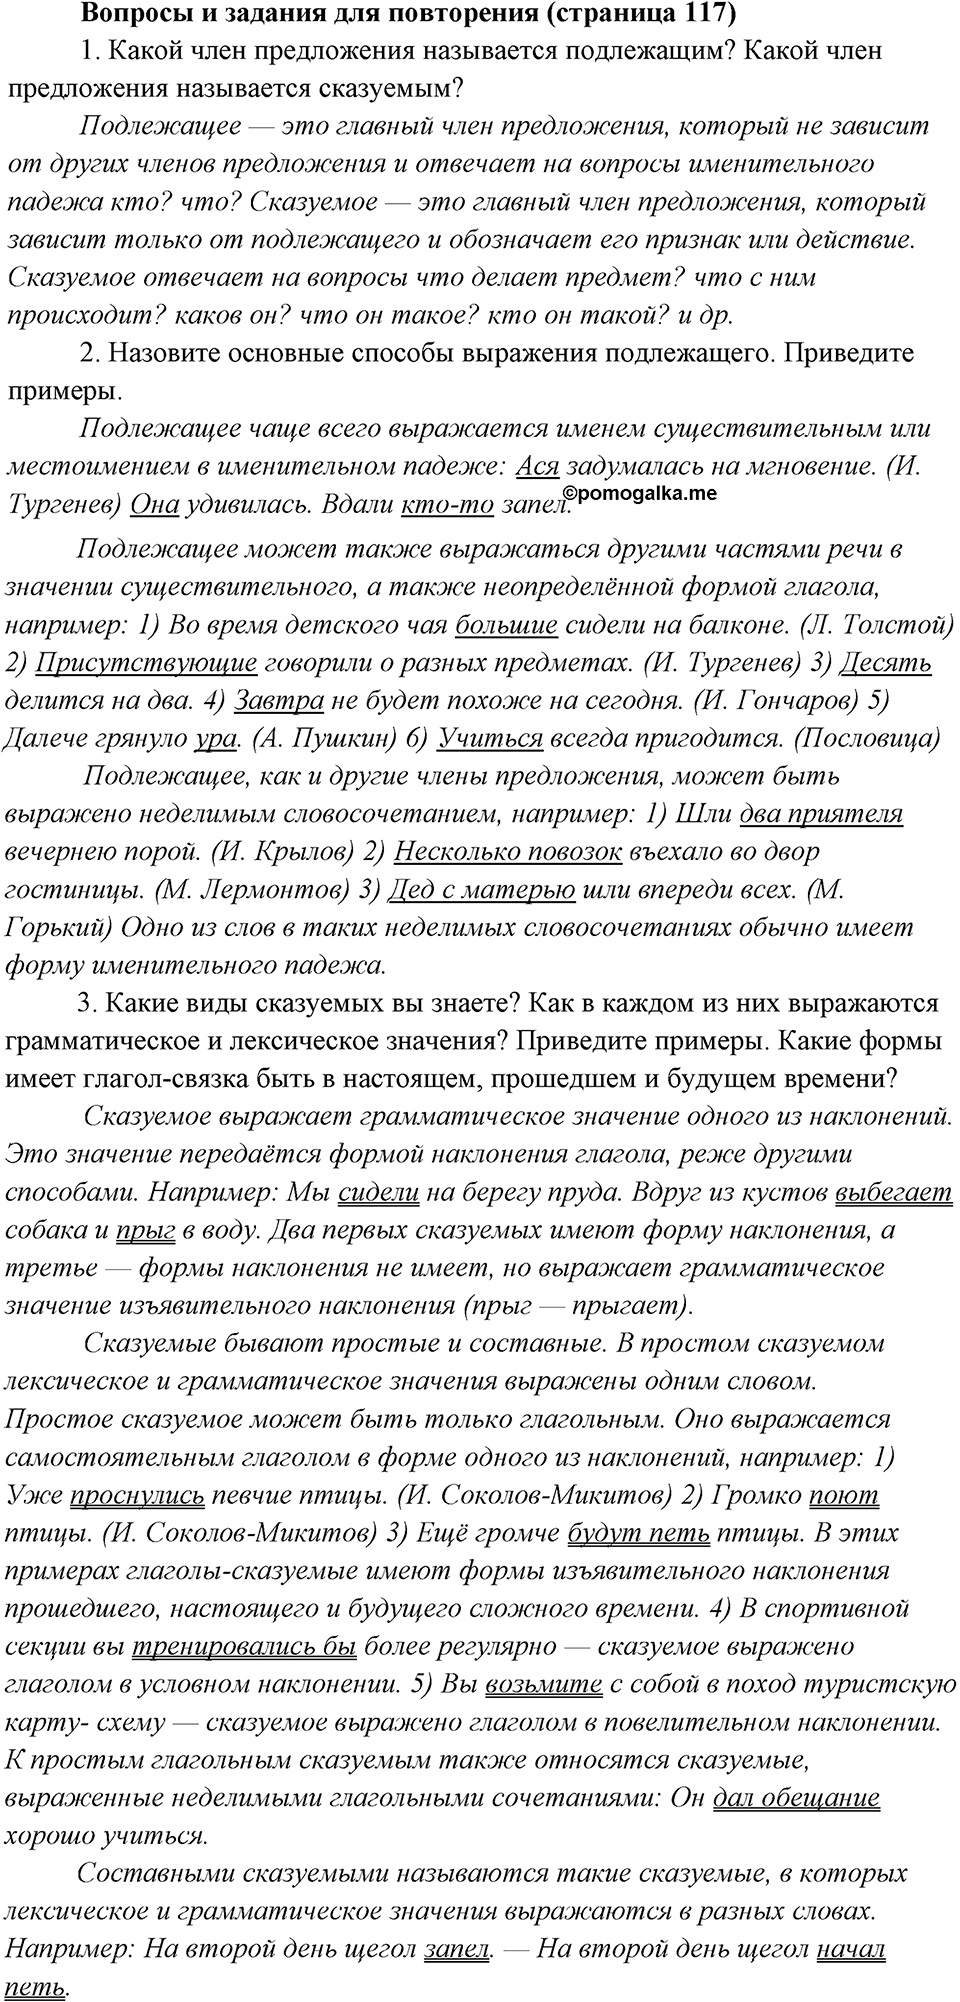 разбор вопросов на странице 117 русский язык 8 класс Бархударов, Крючков, Максимов, Чешко, Николина 2021 год